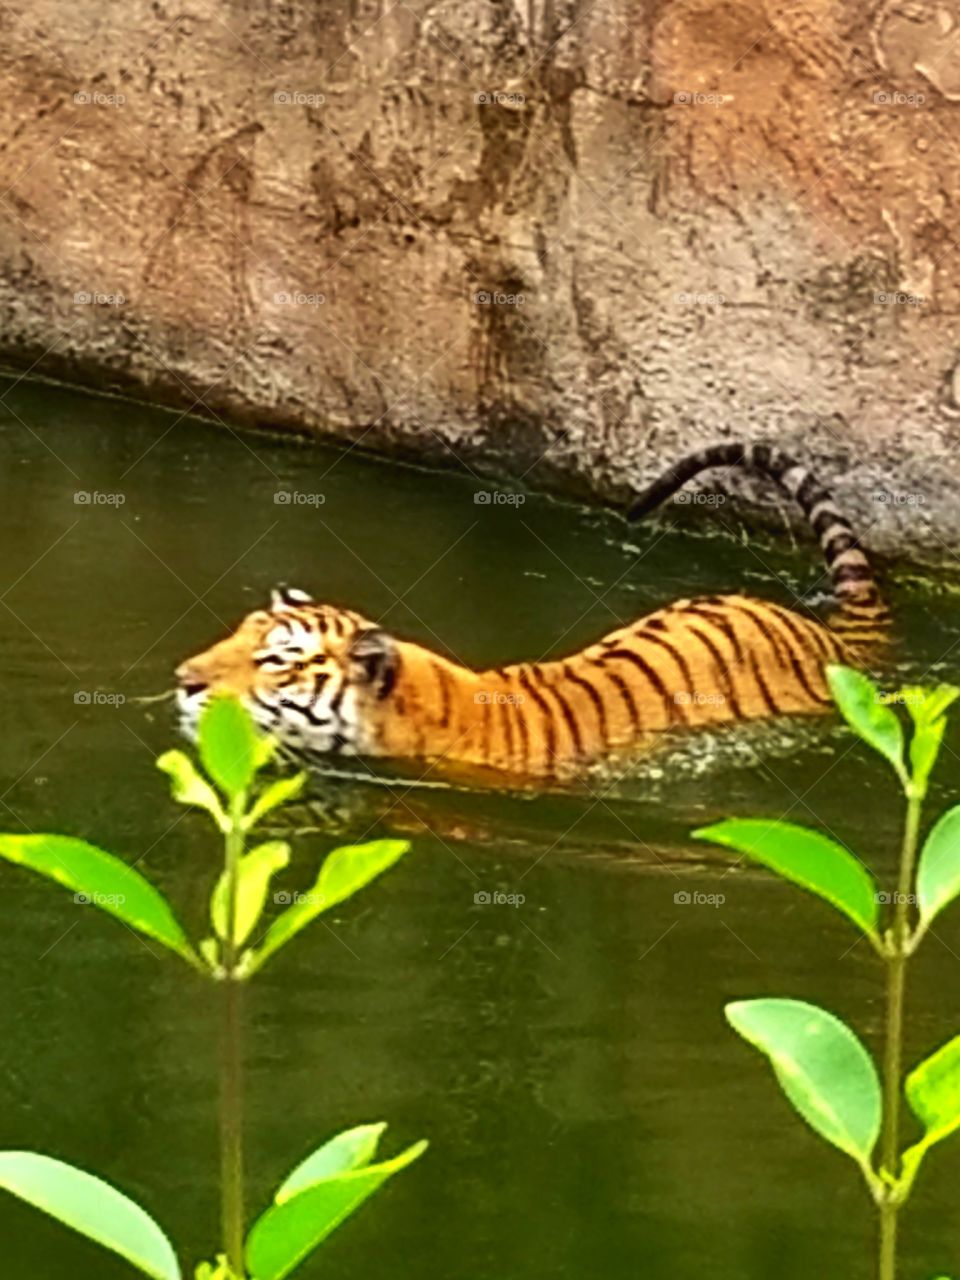 Tiger - Nehru Zoological Park, Hyderabad